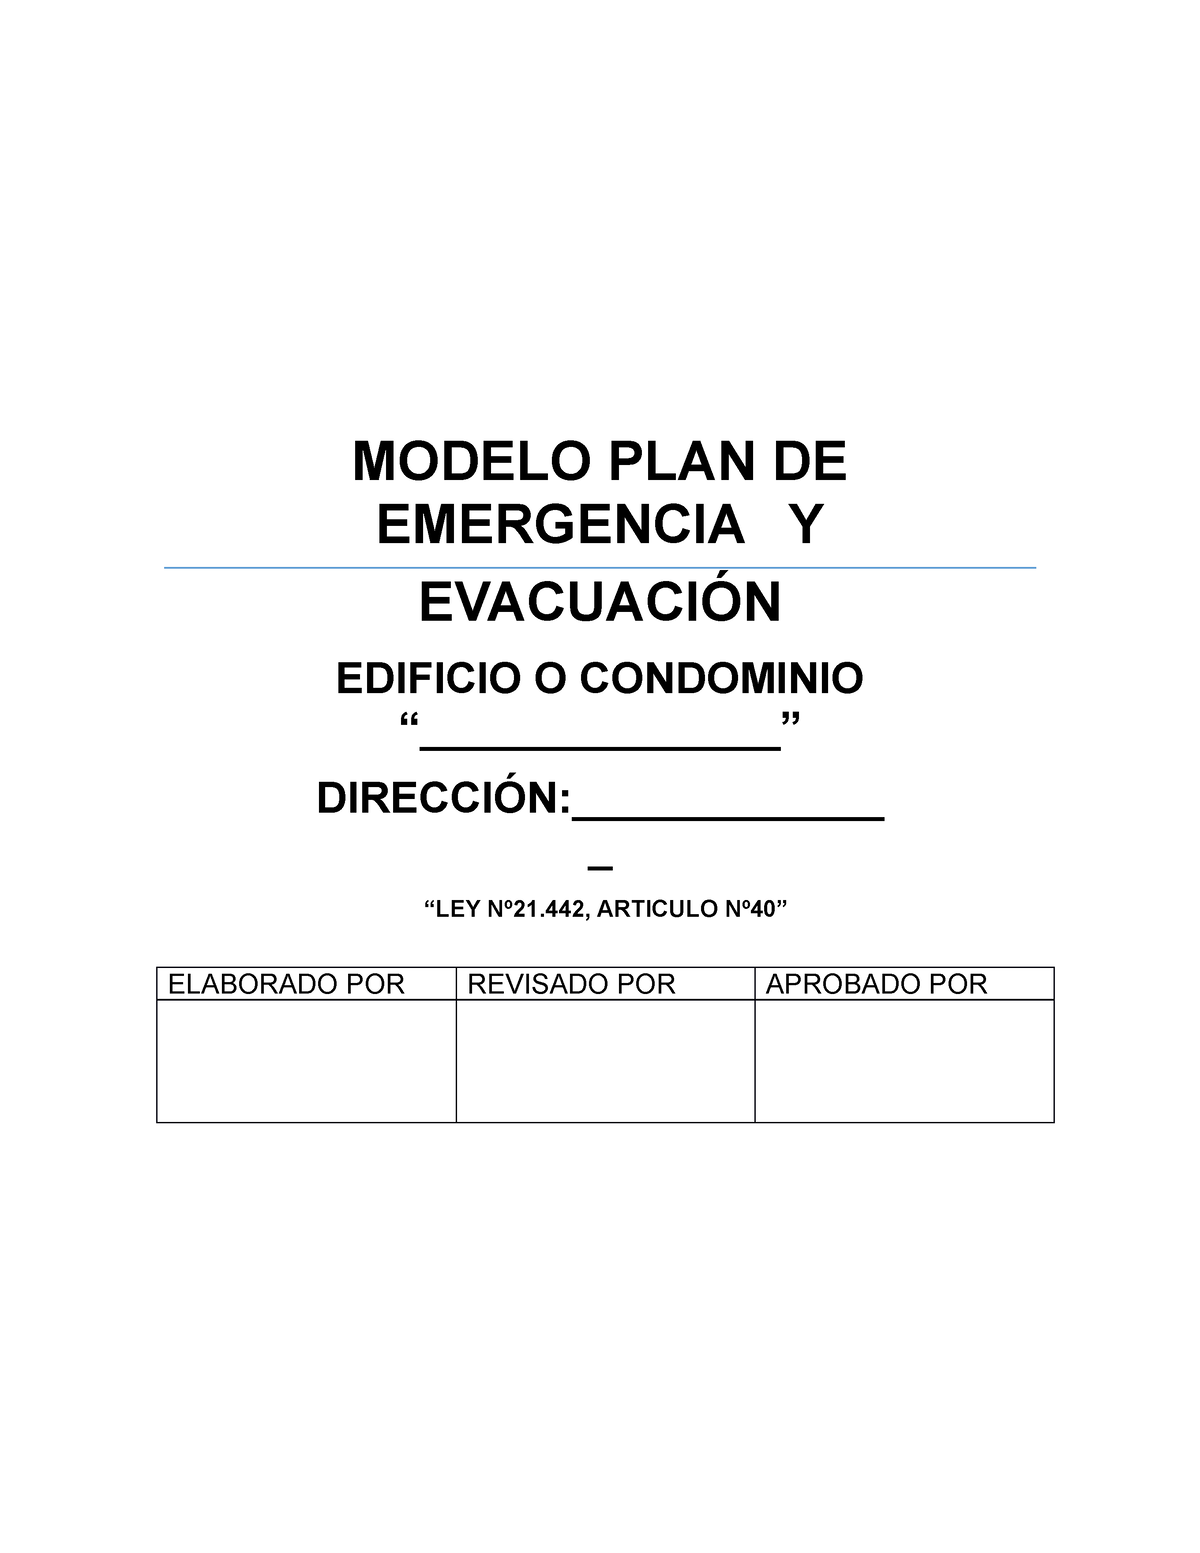 Modelo Plan De Emergencias Edificio O Condominio Modelo Plan De Emergencia Y EvacuaciÓn 8260